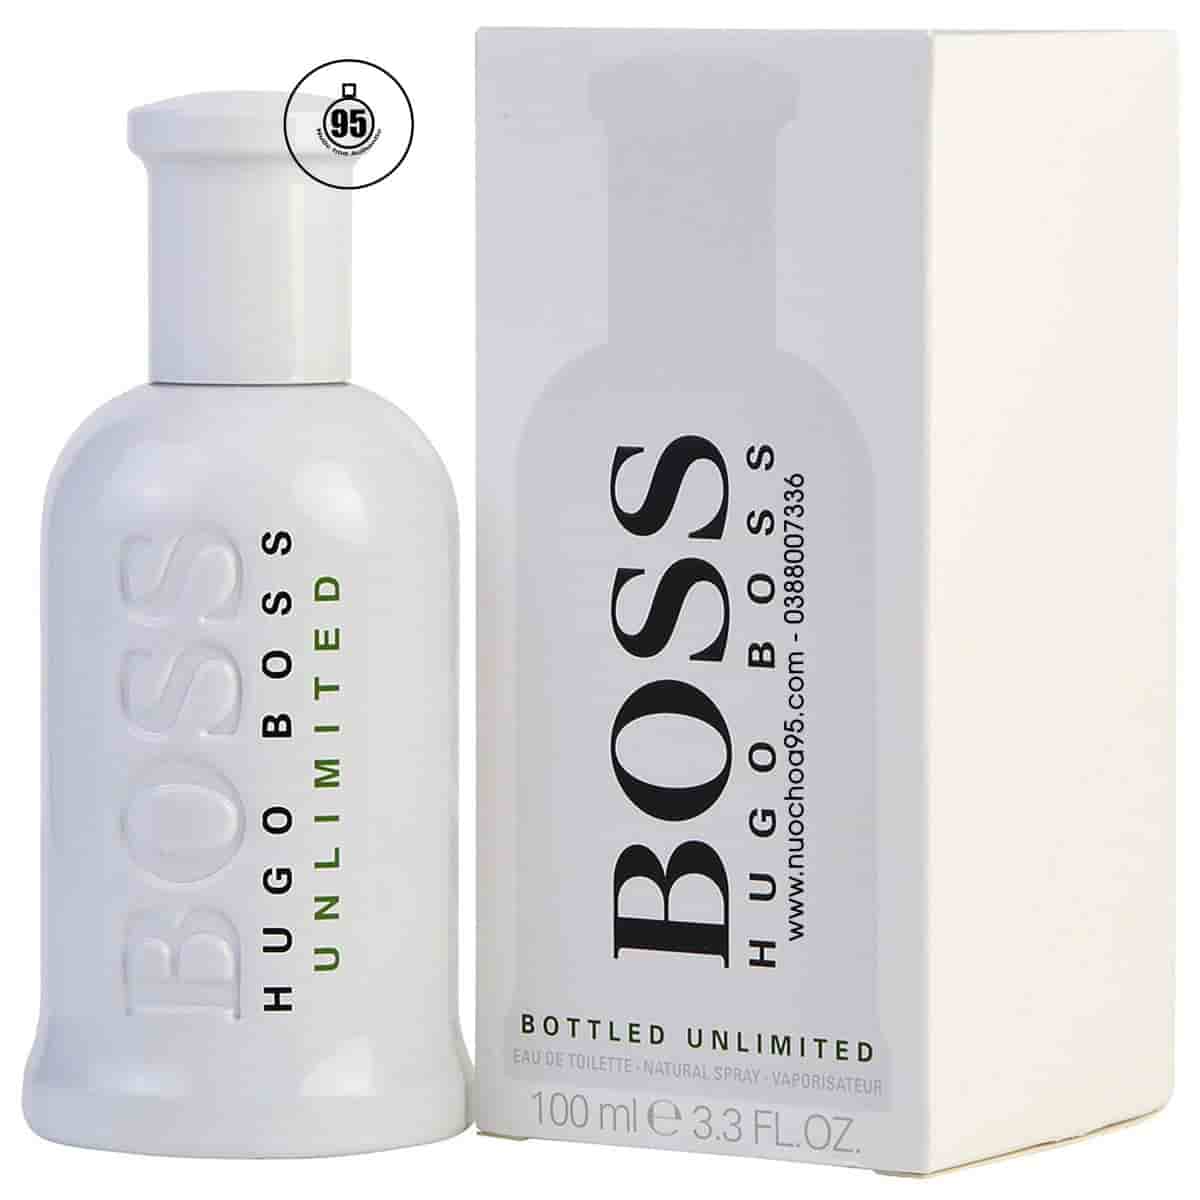 Nước hoa Hugo Boss Bottled Unlimited 